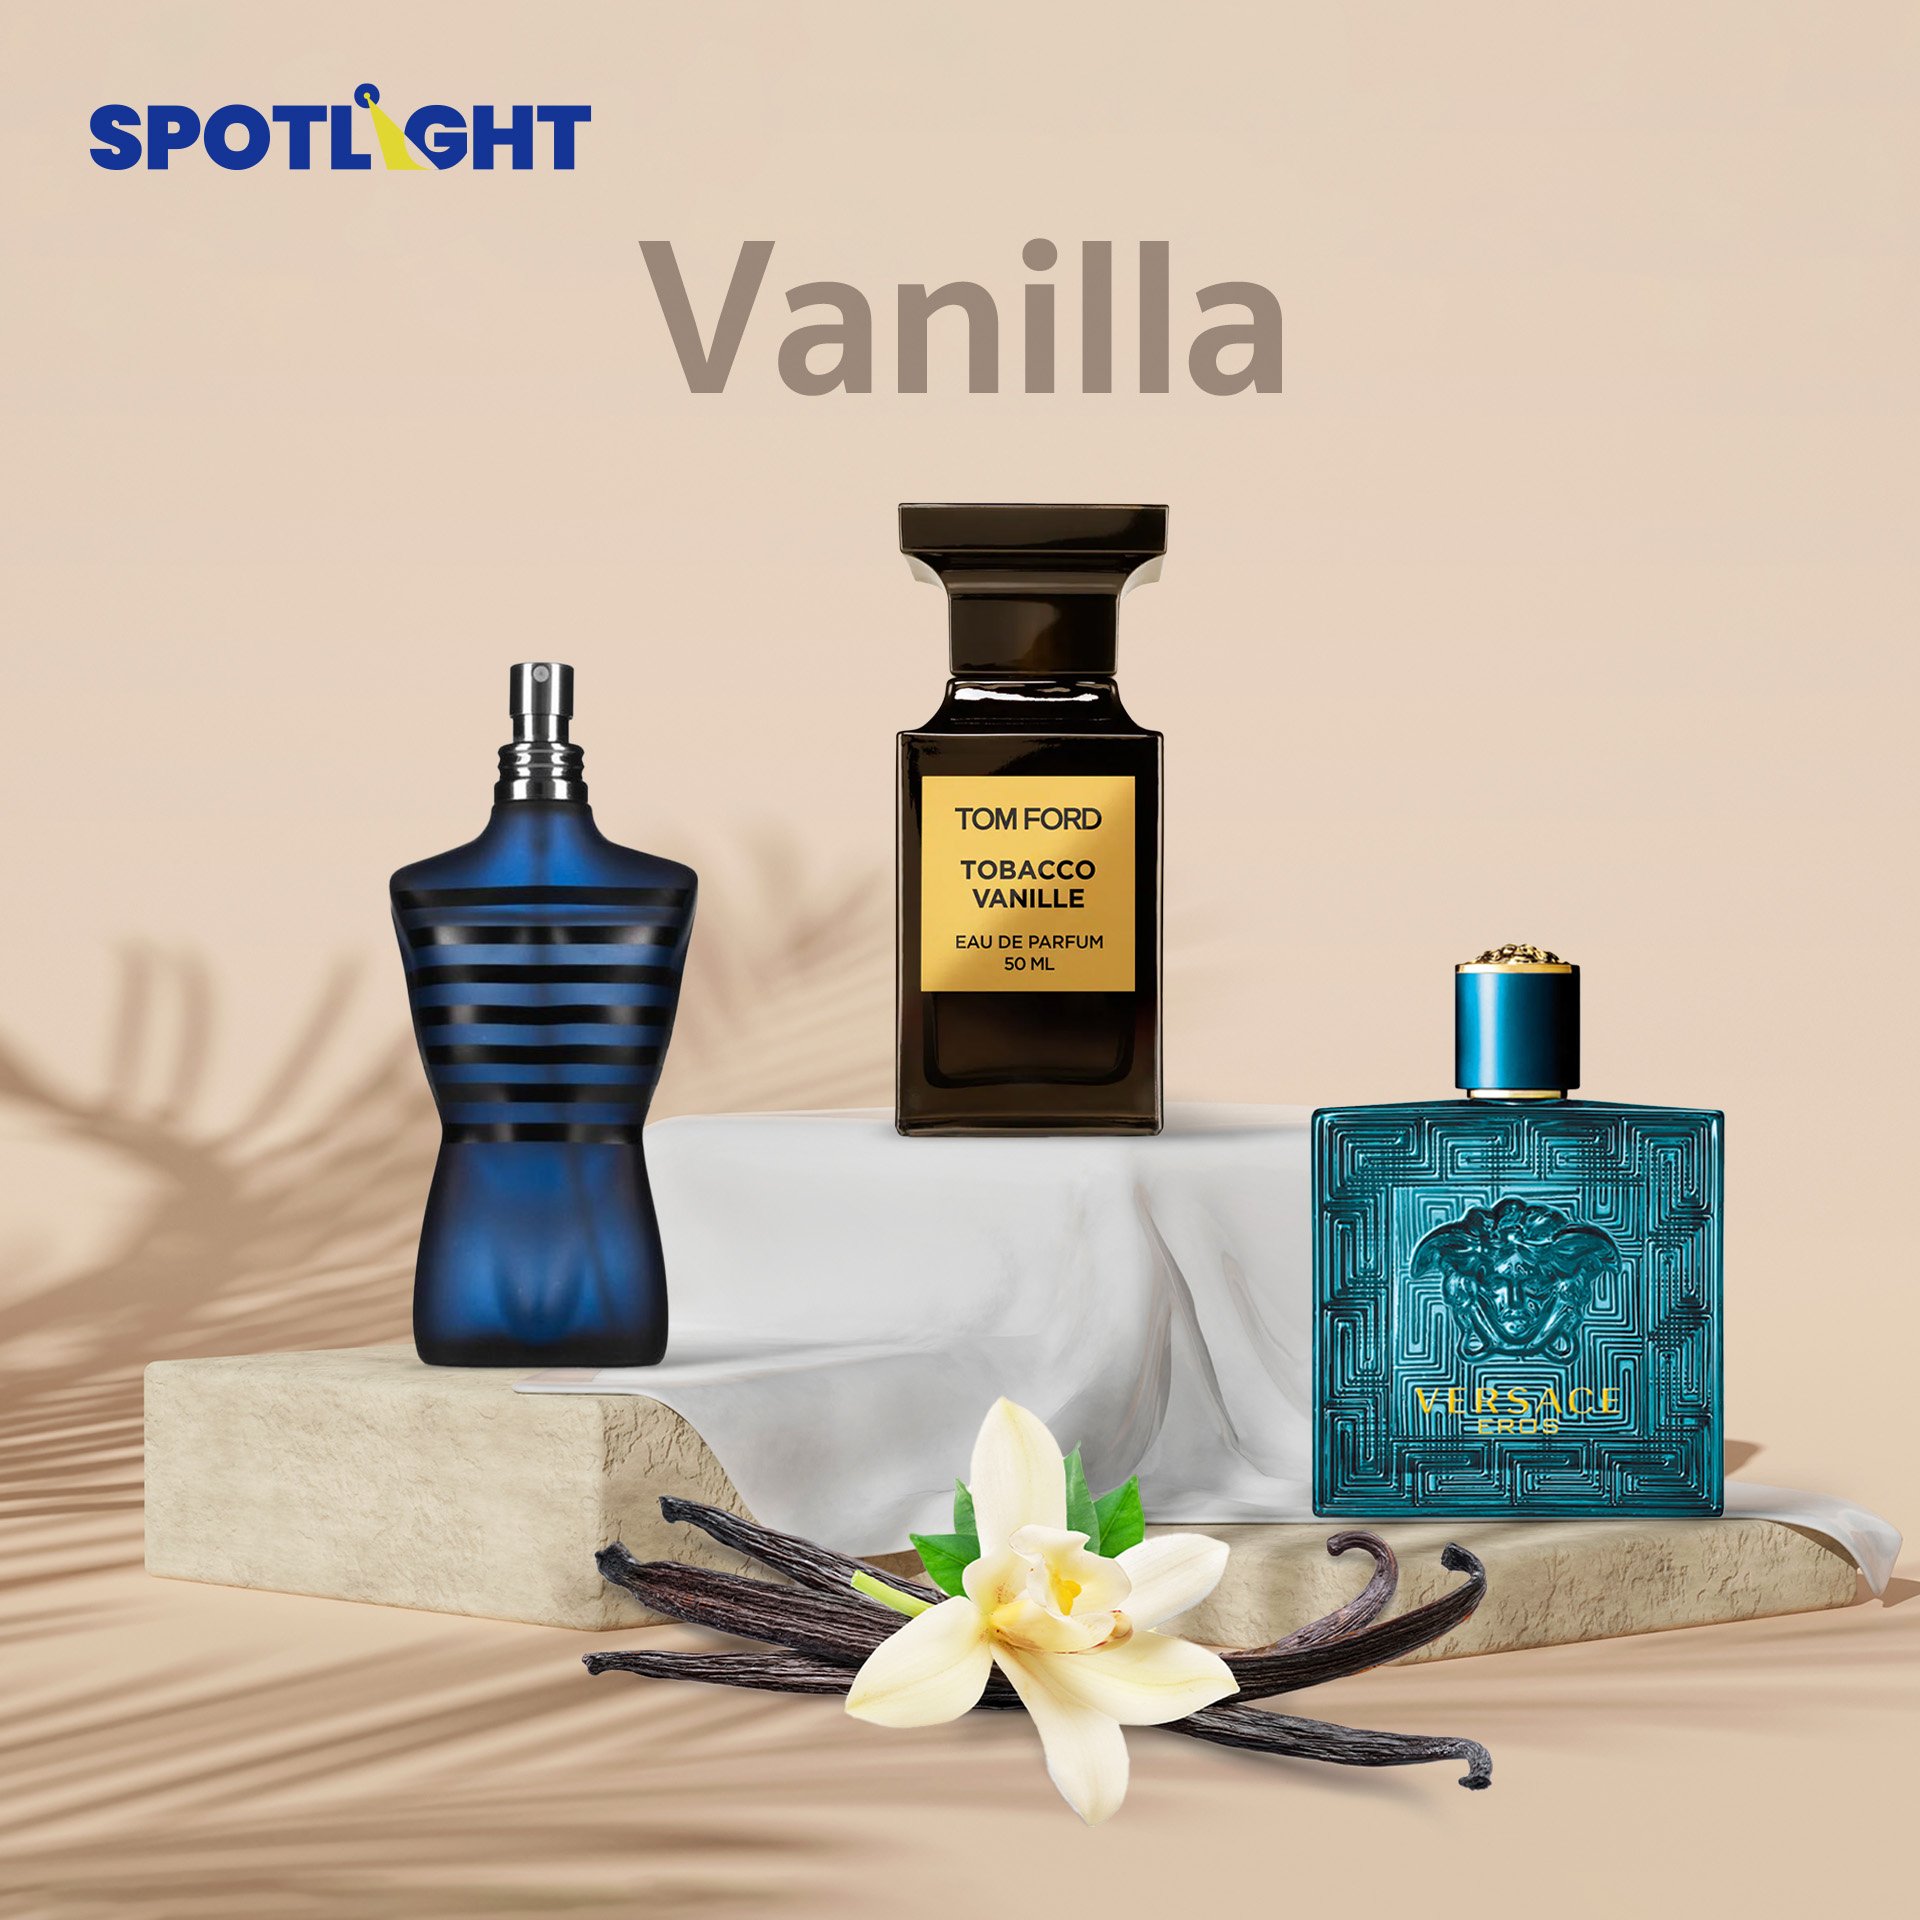 Vanilla (วานิลลา) - กลิ่นหอมหวานละมุนจากฝักของกล้วยไม้สกุล Vanilla ที่พบได้ทั้งขนม เครื่องดื่ม และน้ำหอม กลิ่นของวานิลลาให้ความรู้สึกหอมหวาน อ่อนโยน และผ่อนคลาย จึงมักถูกนำมาเป็น Middle Note หรือ Base Note ในน้ำหอมของทั้งสุภาพบุรุษ และสุภาพสตรี เช่น ‘Tobacco Vanille’ น้ำหอมอันอบอุ่น น่าหลงใหล แต่แฝงด้วยความหรูหรา ทันสมัย จากแบรนด์ Tom Ford,  ‘Ultra Male’ น้ำหอมที่บ่งบอกถึงความเป็นชายชาตรี แต่ก็มีมุมที่หวานละมุน จาก Jean Paul Gaultier, ‘Eros’ น้ำหอมที่ได้แรงบันดาลใจจากเทพ ‘อีรอส หรือ คิวปิด’ เทพแห่งความรัก จาก Versace